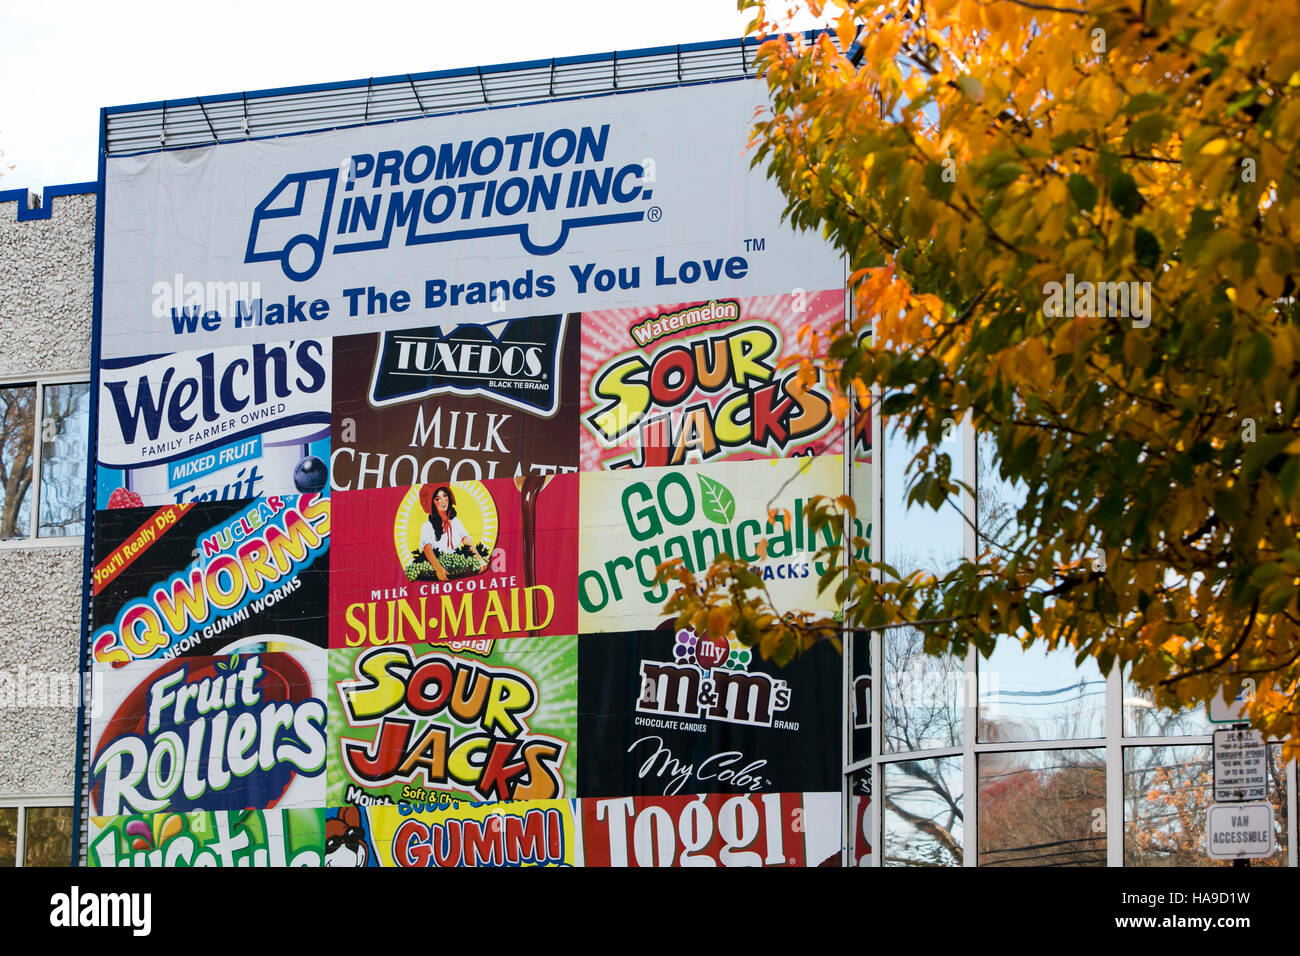 Un logotipo cartel fuera de una instalación ocupada por la promoción en movimiento Companies, Inc., en Somerset, Nueva Jersey el 6 de noviembre de 2016. Foto de stock